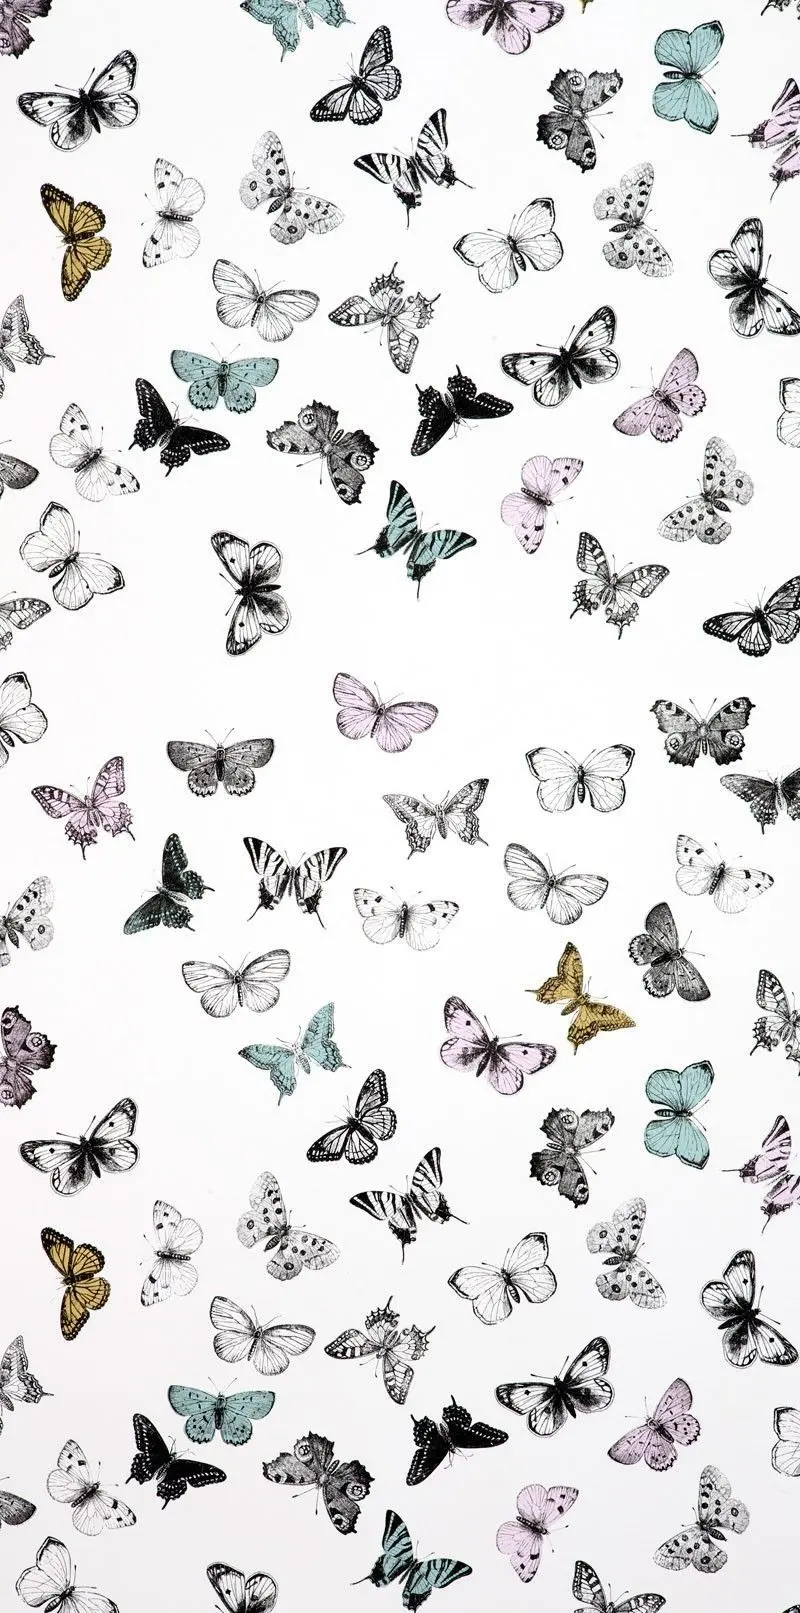 تصویر استوک با زمینه سفید و پروانه های رنگی زنگی برای آیفون 